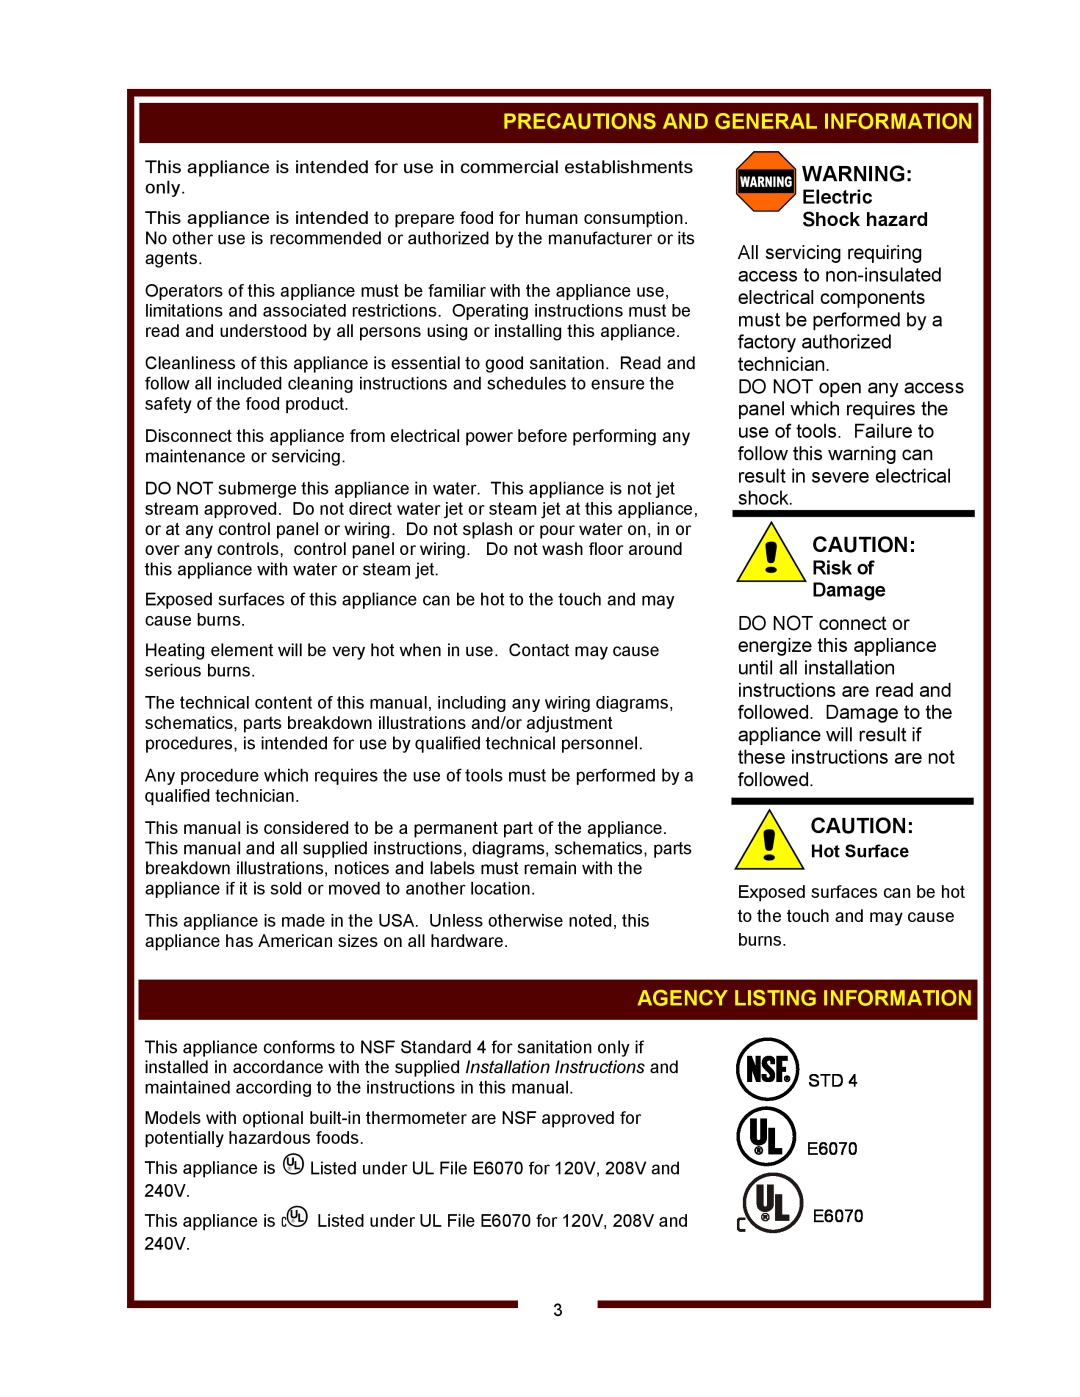 Wells RW-1HD thru RW-3HD Heavy-Duty Precautions And General Information, Agency Listing Information, Electric Shock hazard 